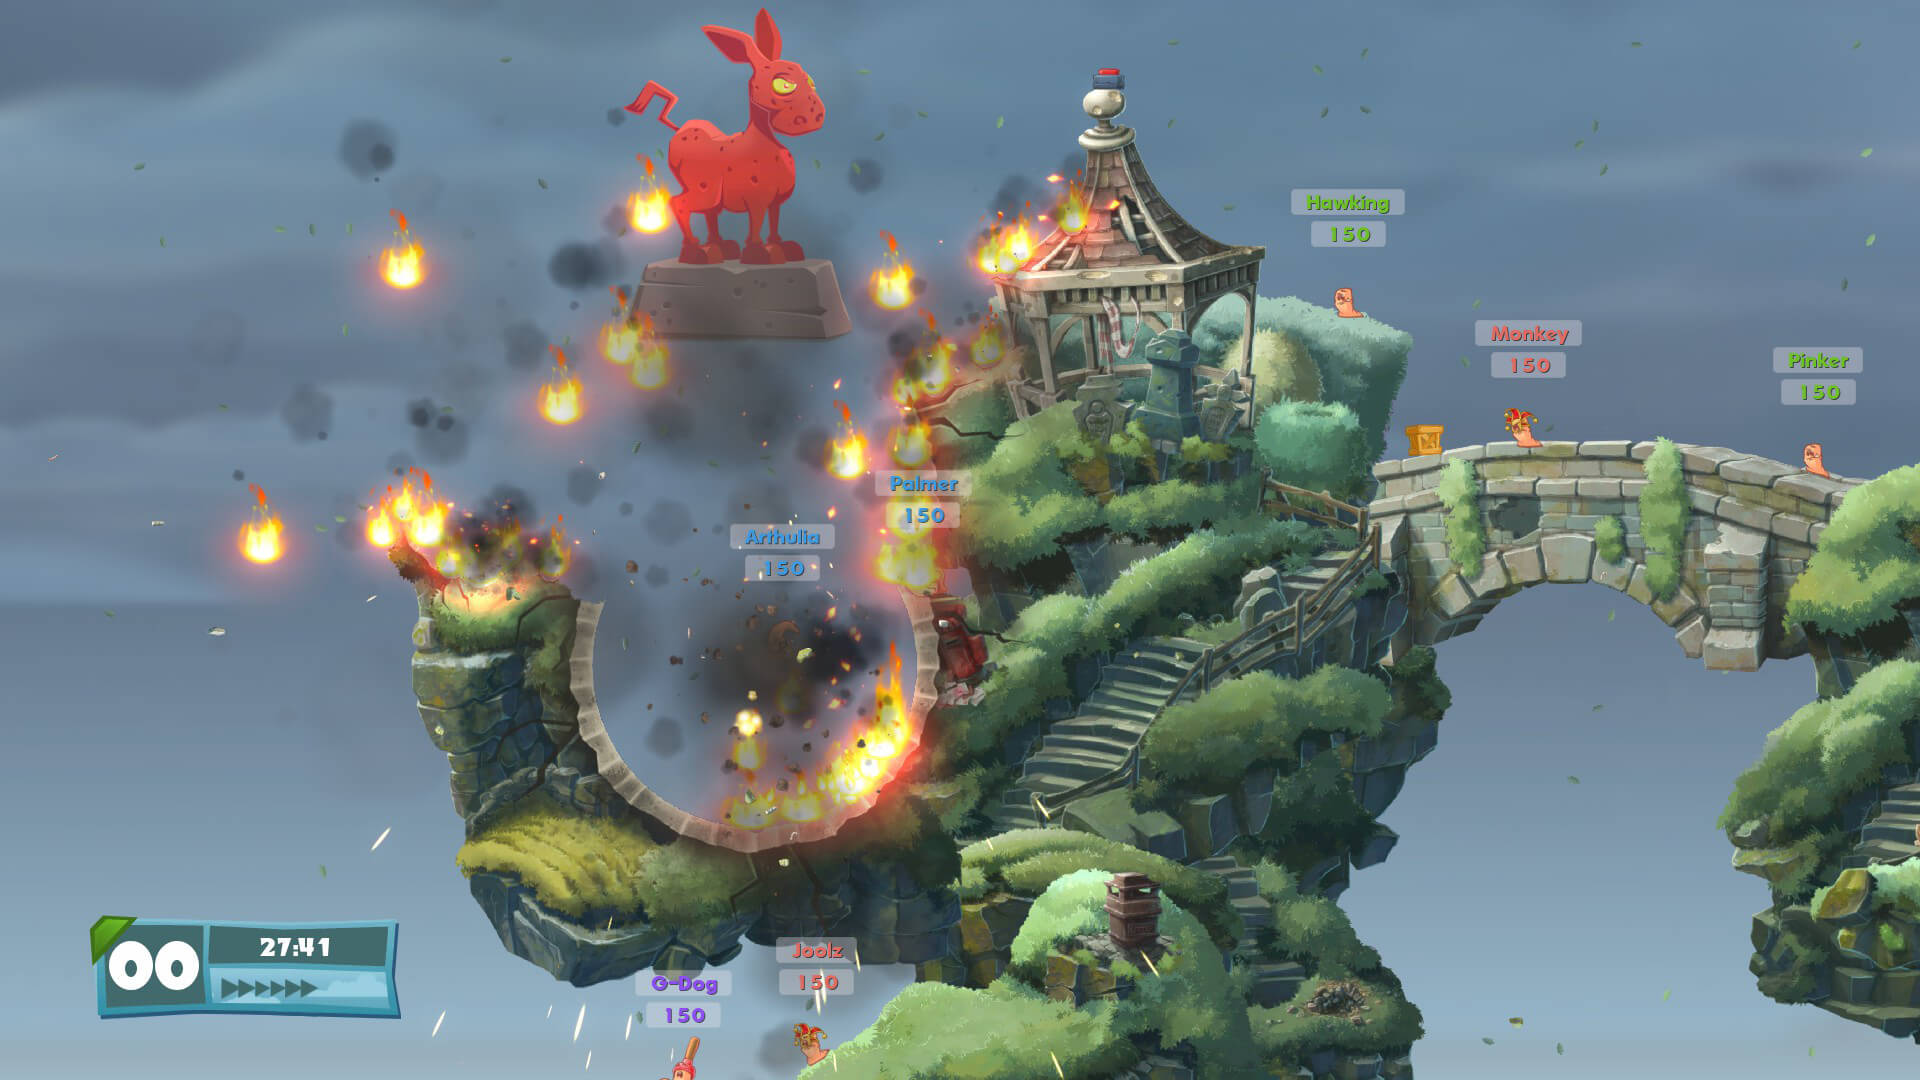 A battle underway in Team17's game Worms WMD